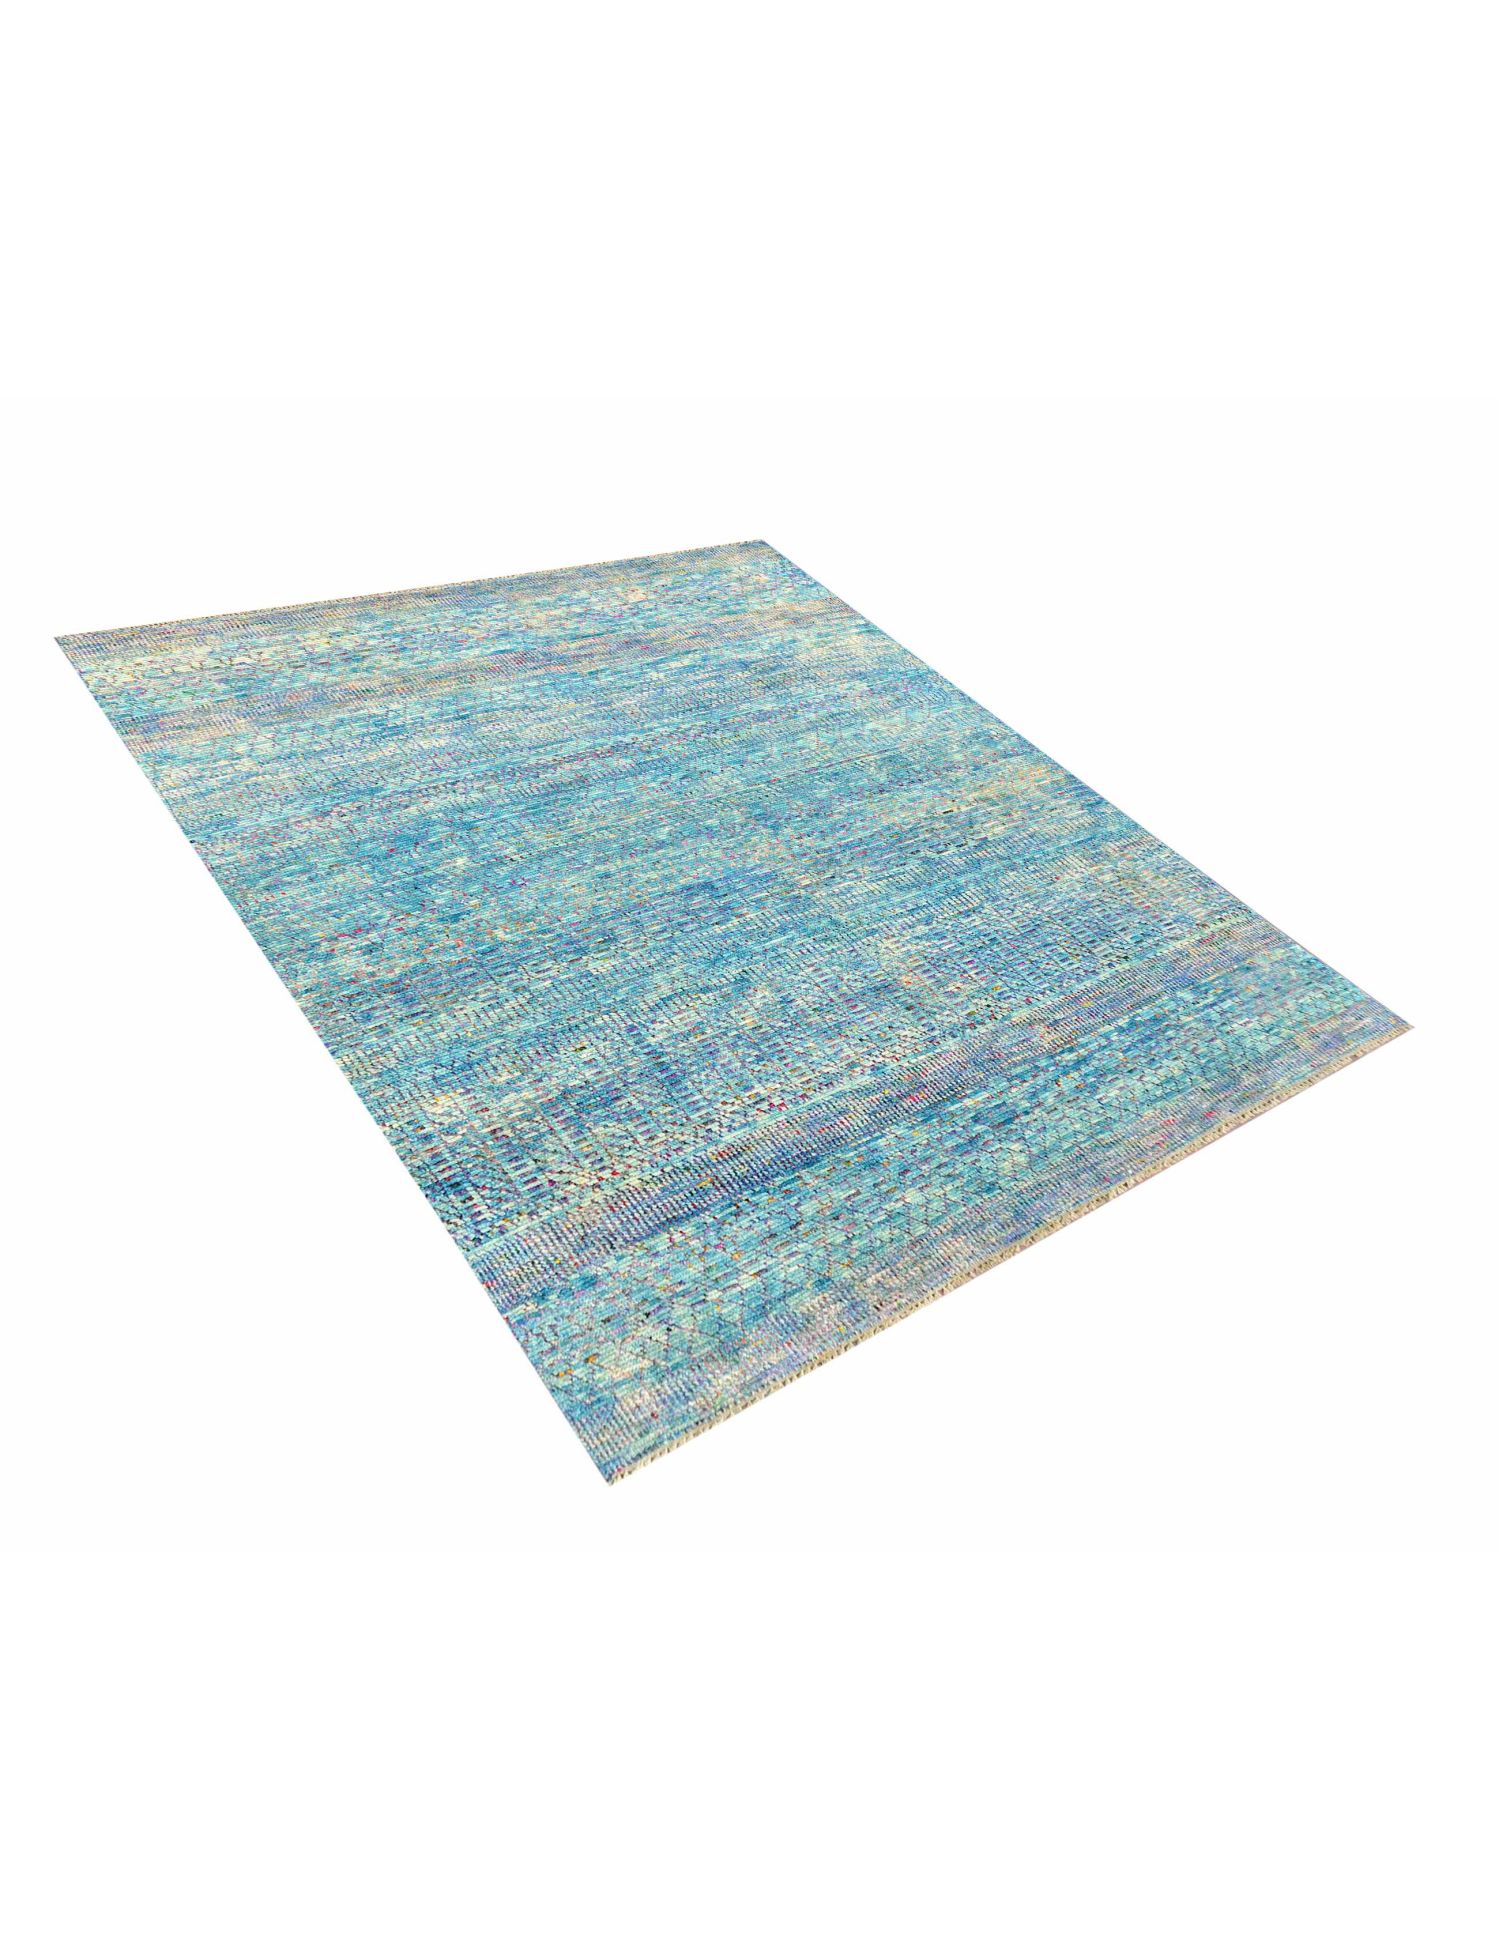 Taj Wool & Silk  Μπλε <br/>309 x 241 cm